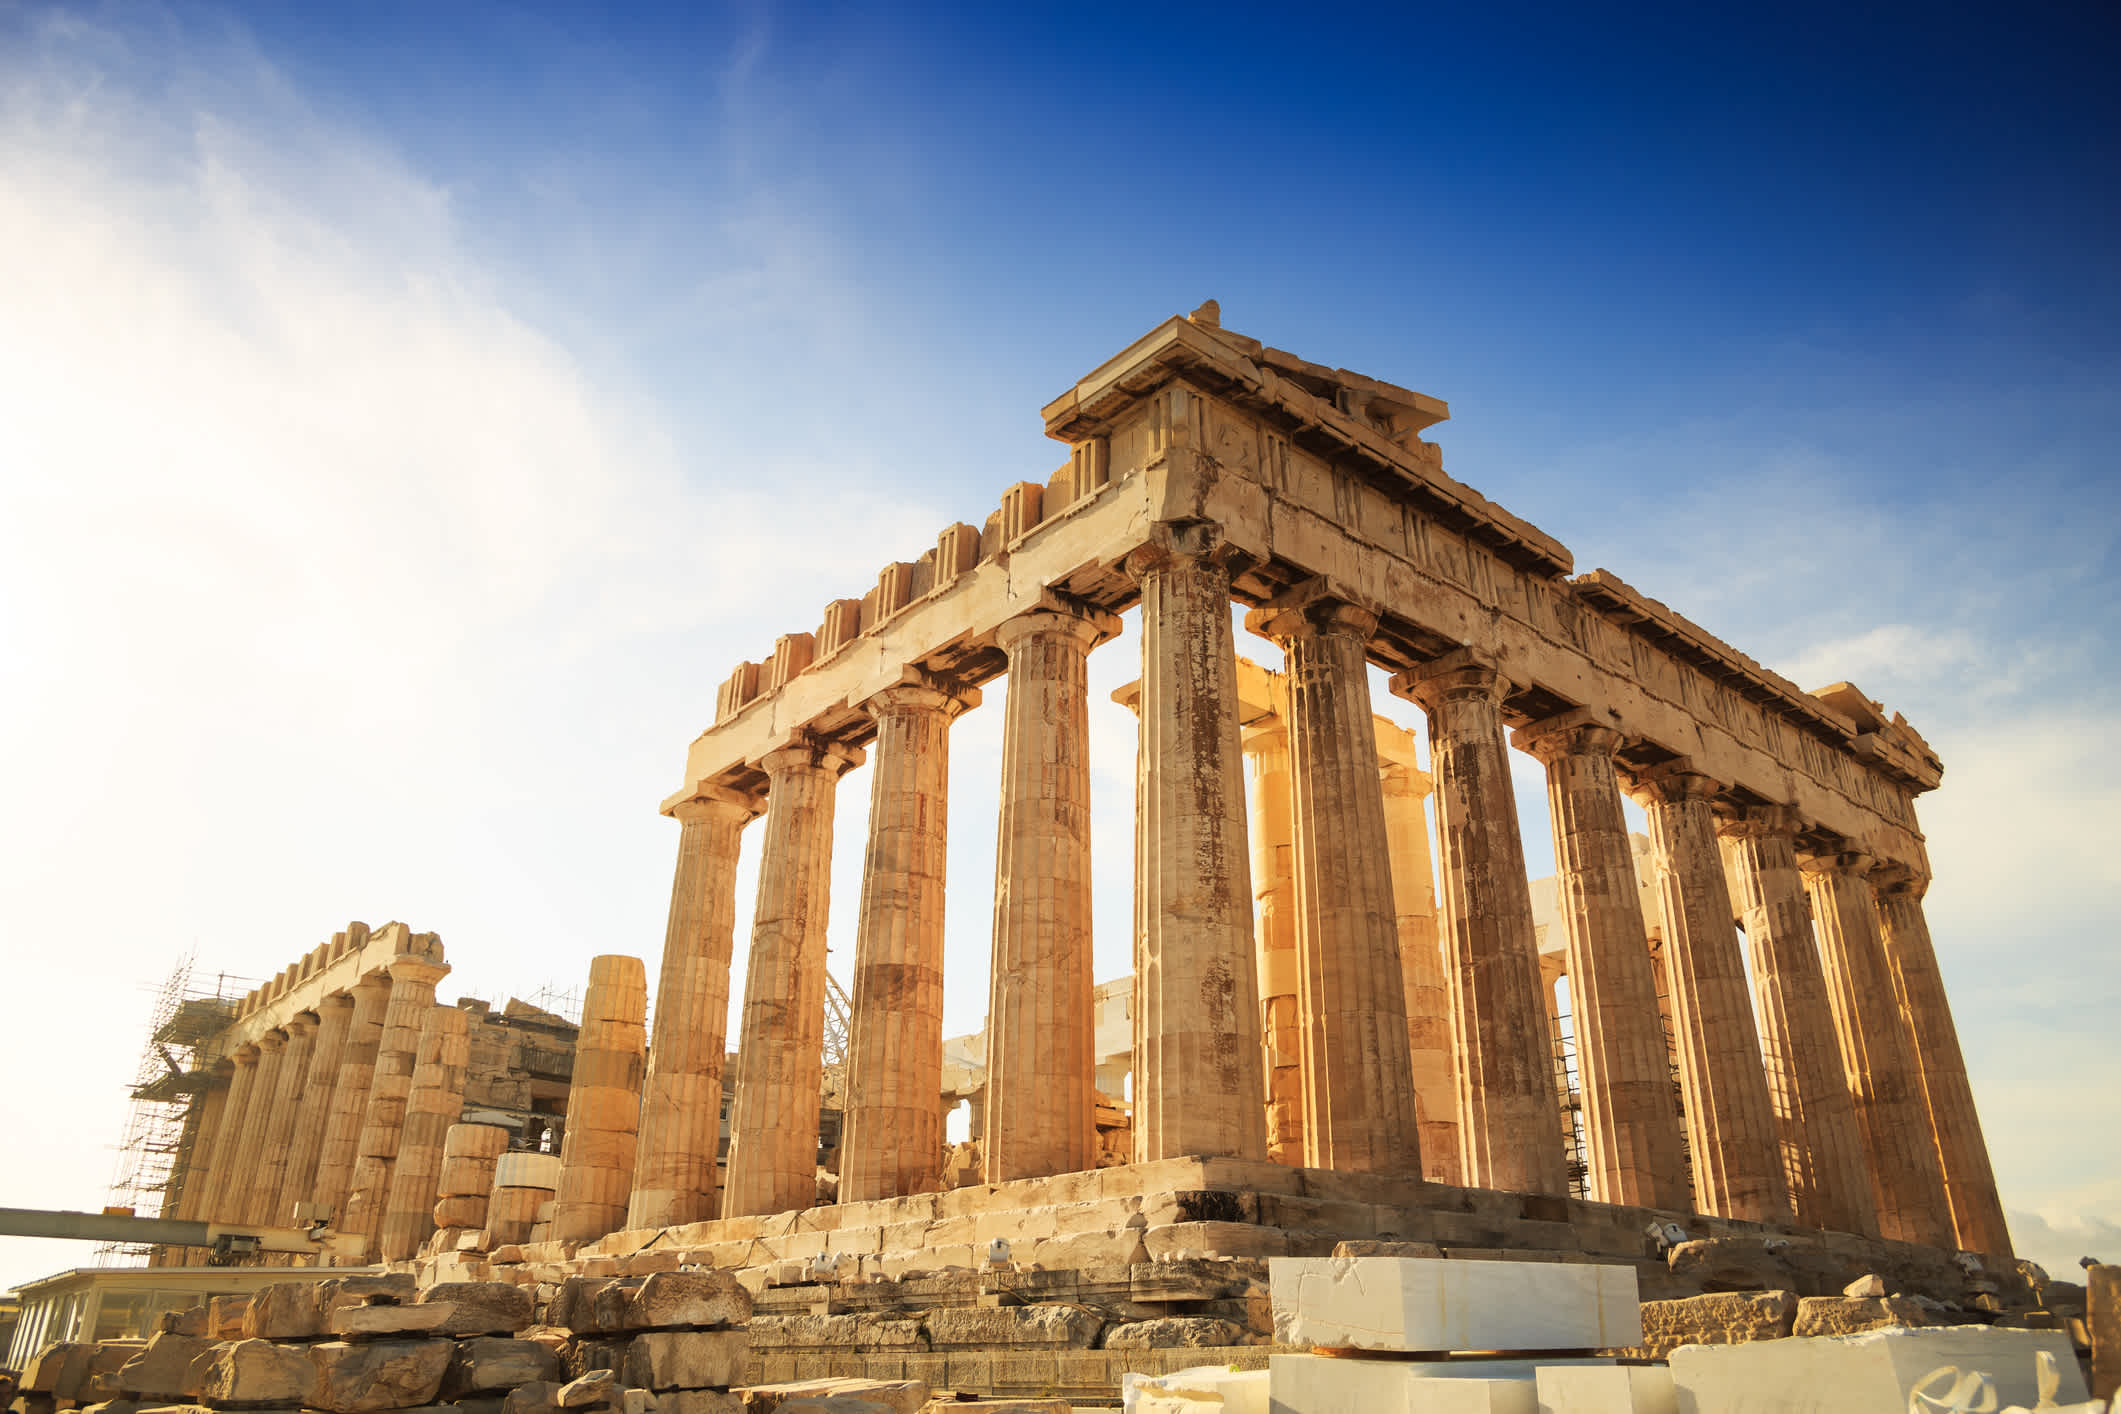 Gezicht op een ruïne in Athene, waarvan er vele te bewonderen zijn tijdens een vakantie in Athene.